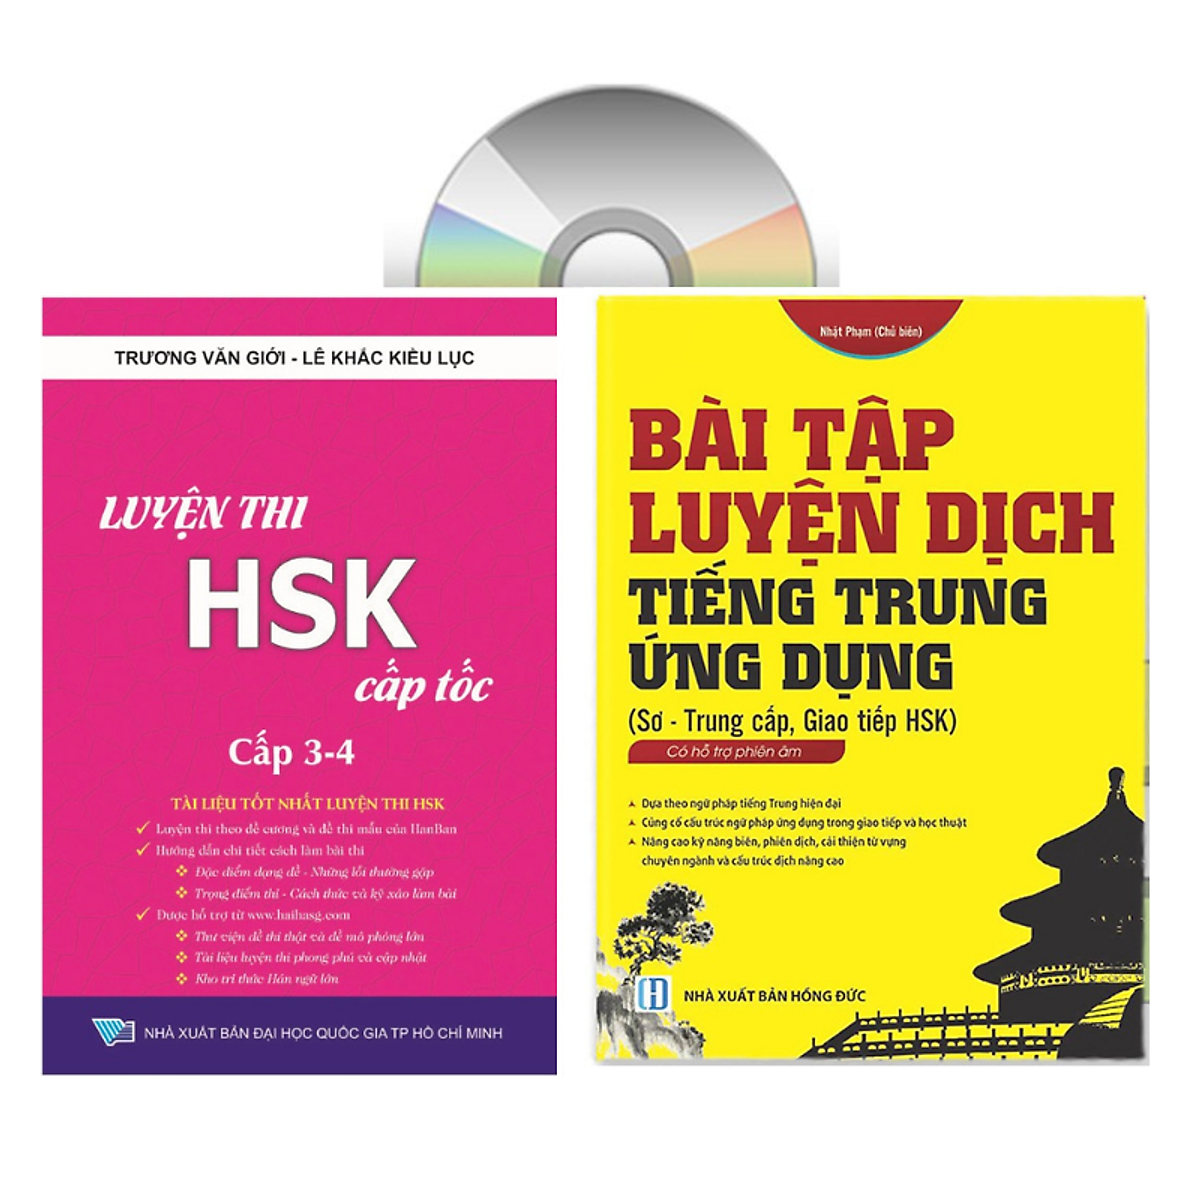 Sách - combo: Luyện thi HSK cấp tốc tập 2 (tương đương HSK 3+4 kèm CD) + Bài tập luyện dịch tiếng Trung ứng dụng (Sơ -Trung cấp, Giao tiếp HSK có mp3 nghe, có đáp án)+DVD tài liệu